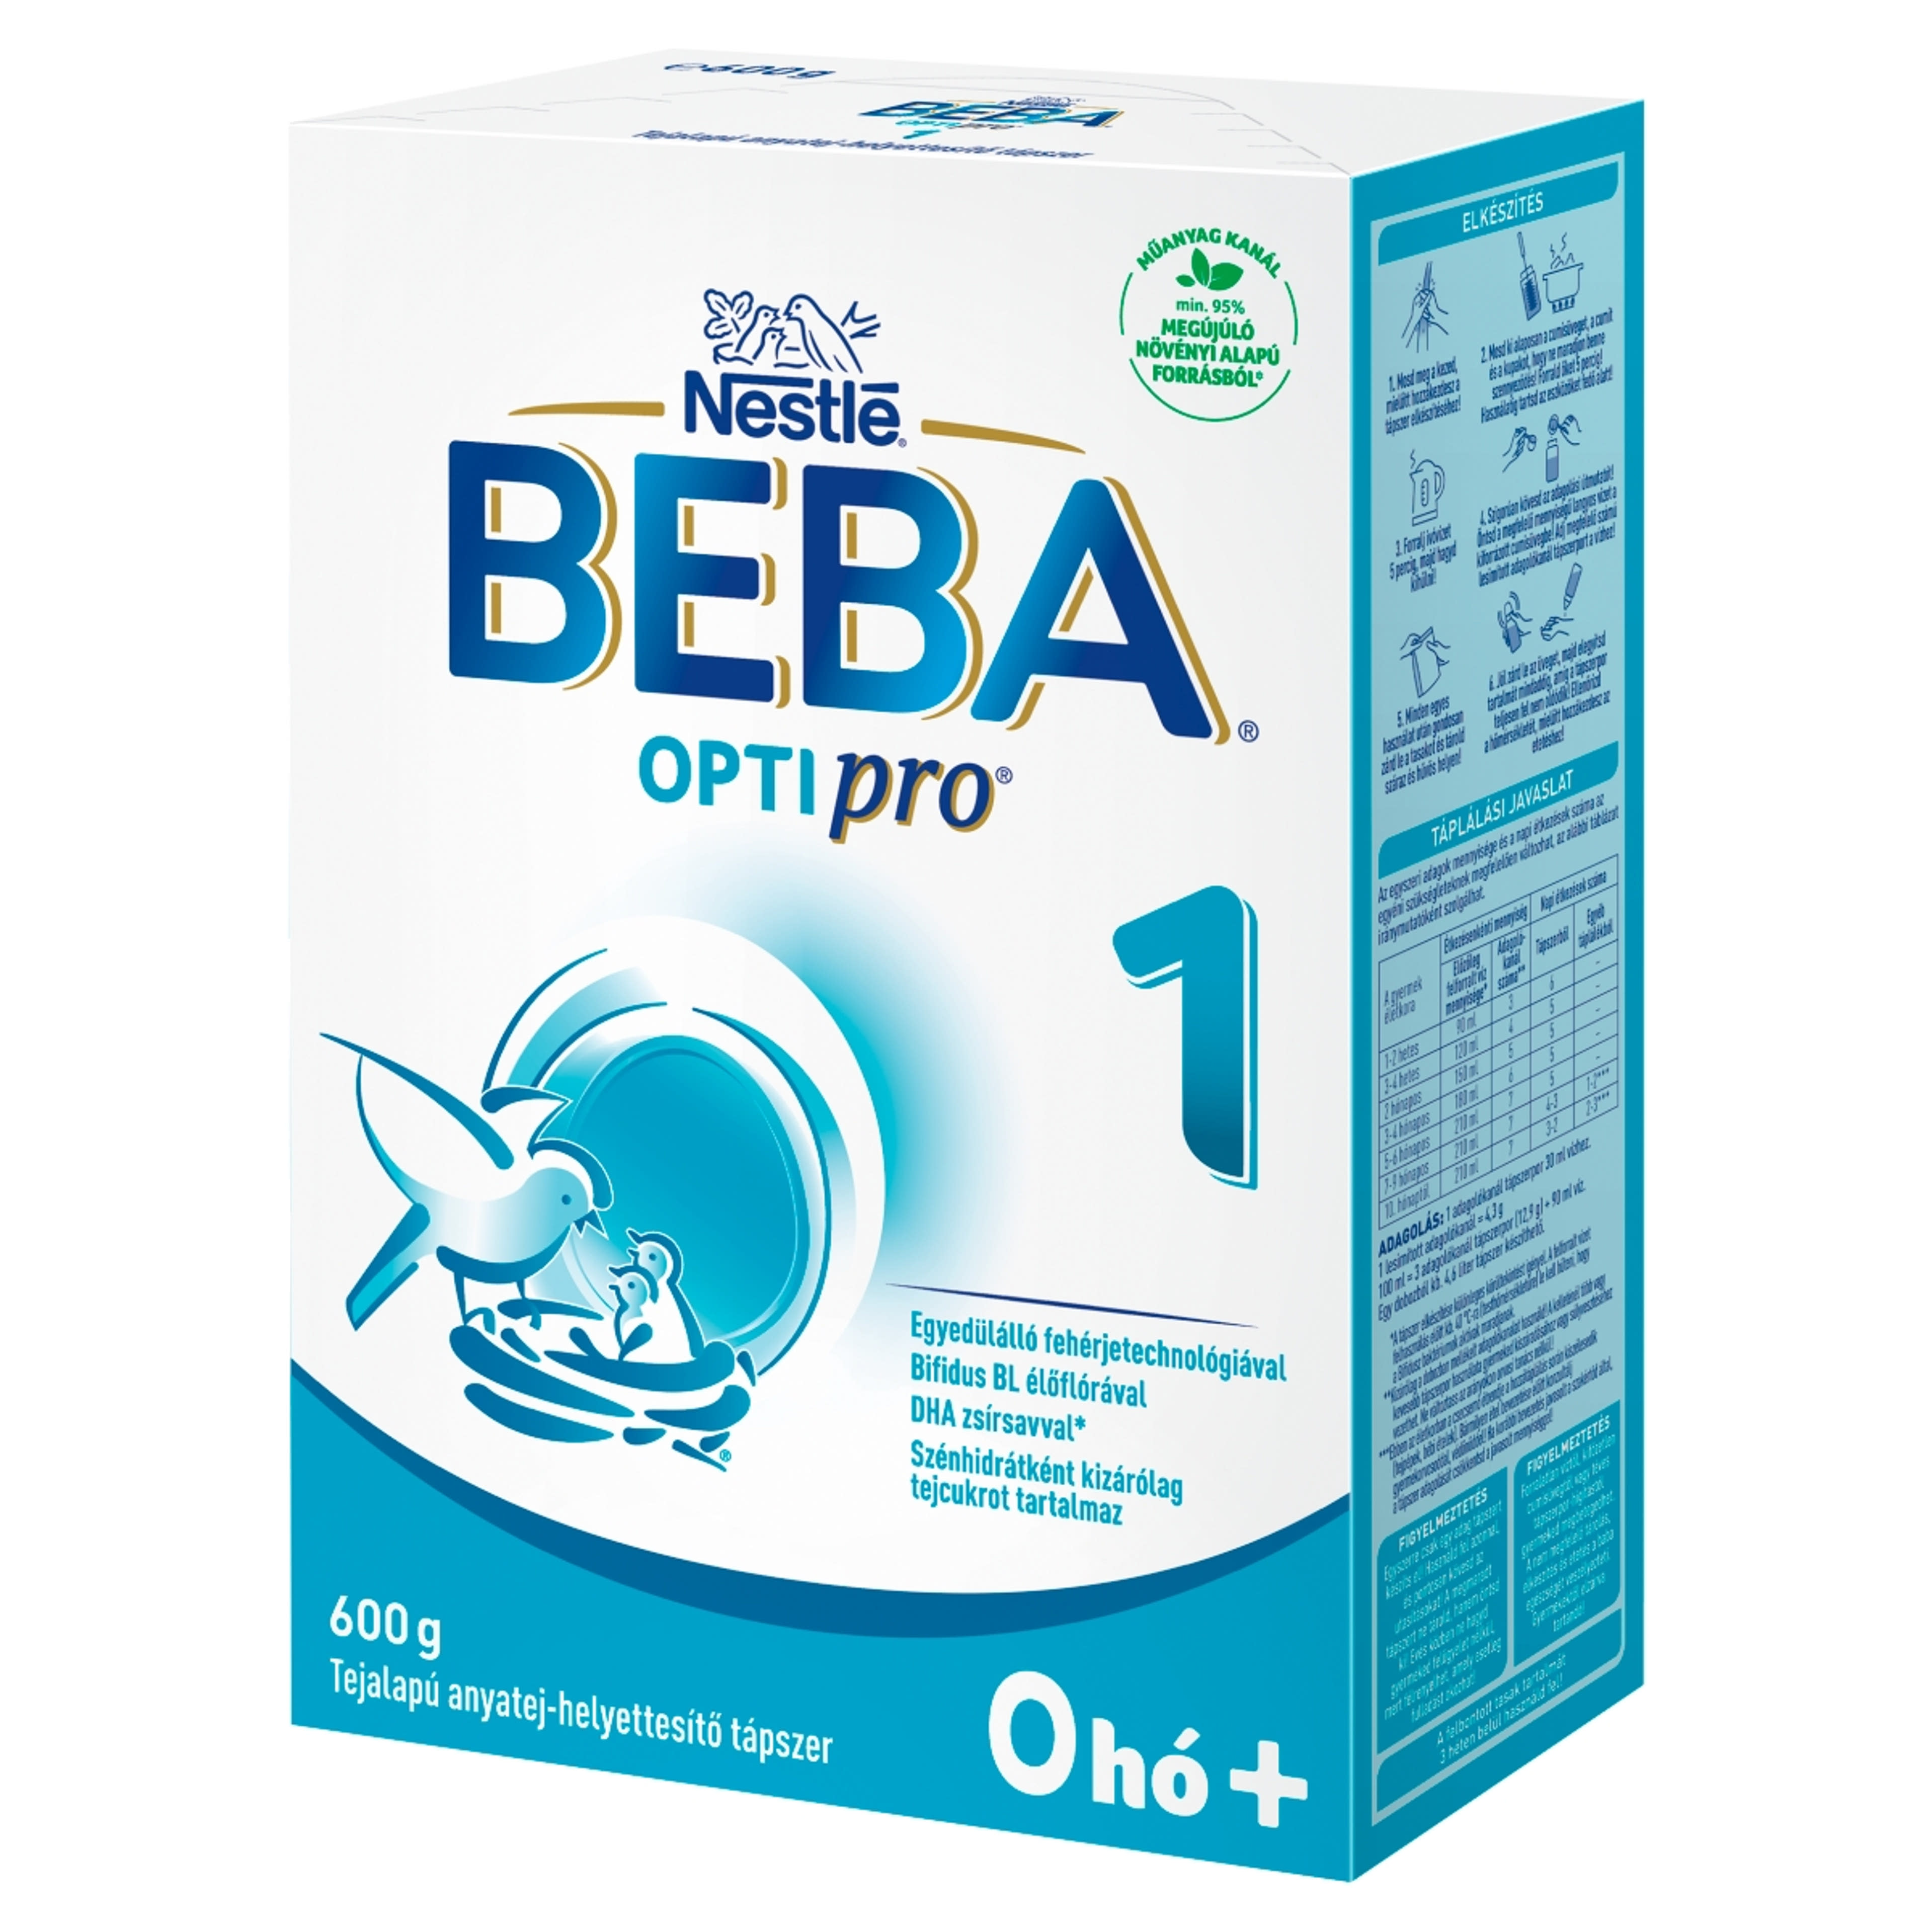 Beba Optipro1 tejalapú anyatej-helyettesítő tápszer 0 hónapos kortól - 600 g-2